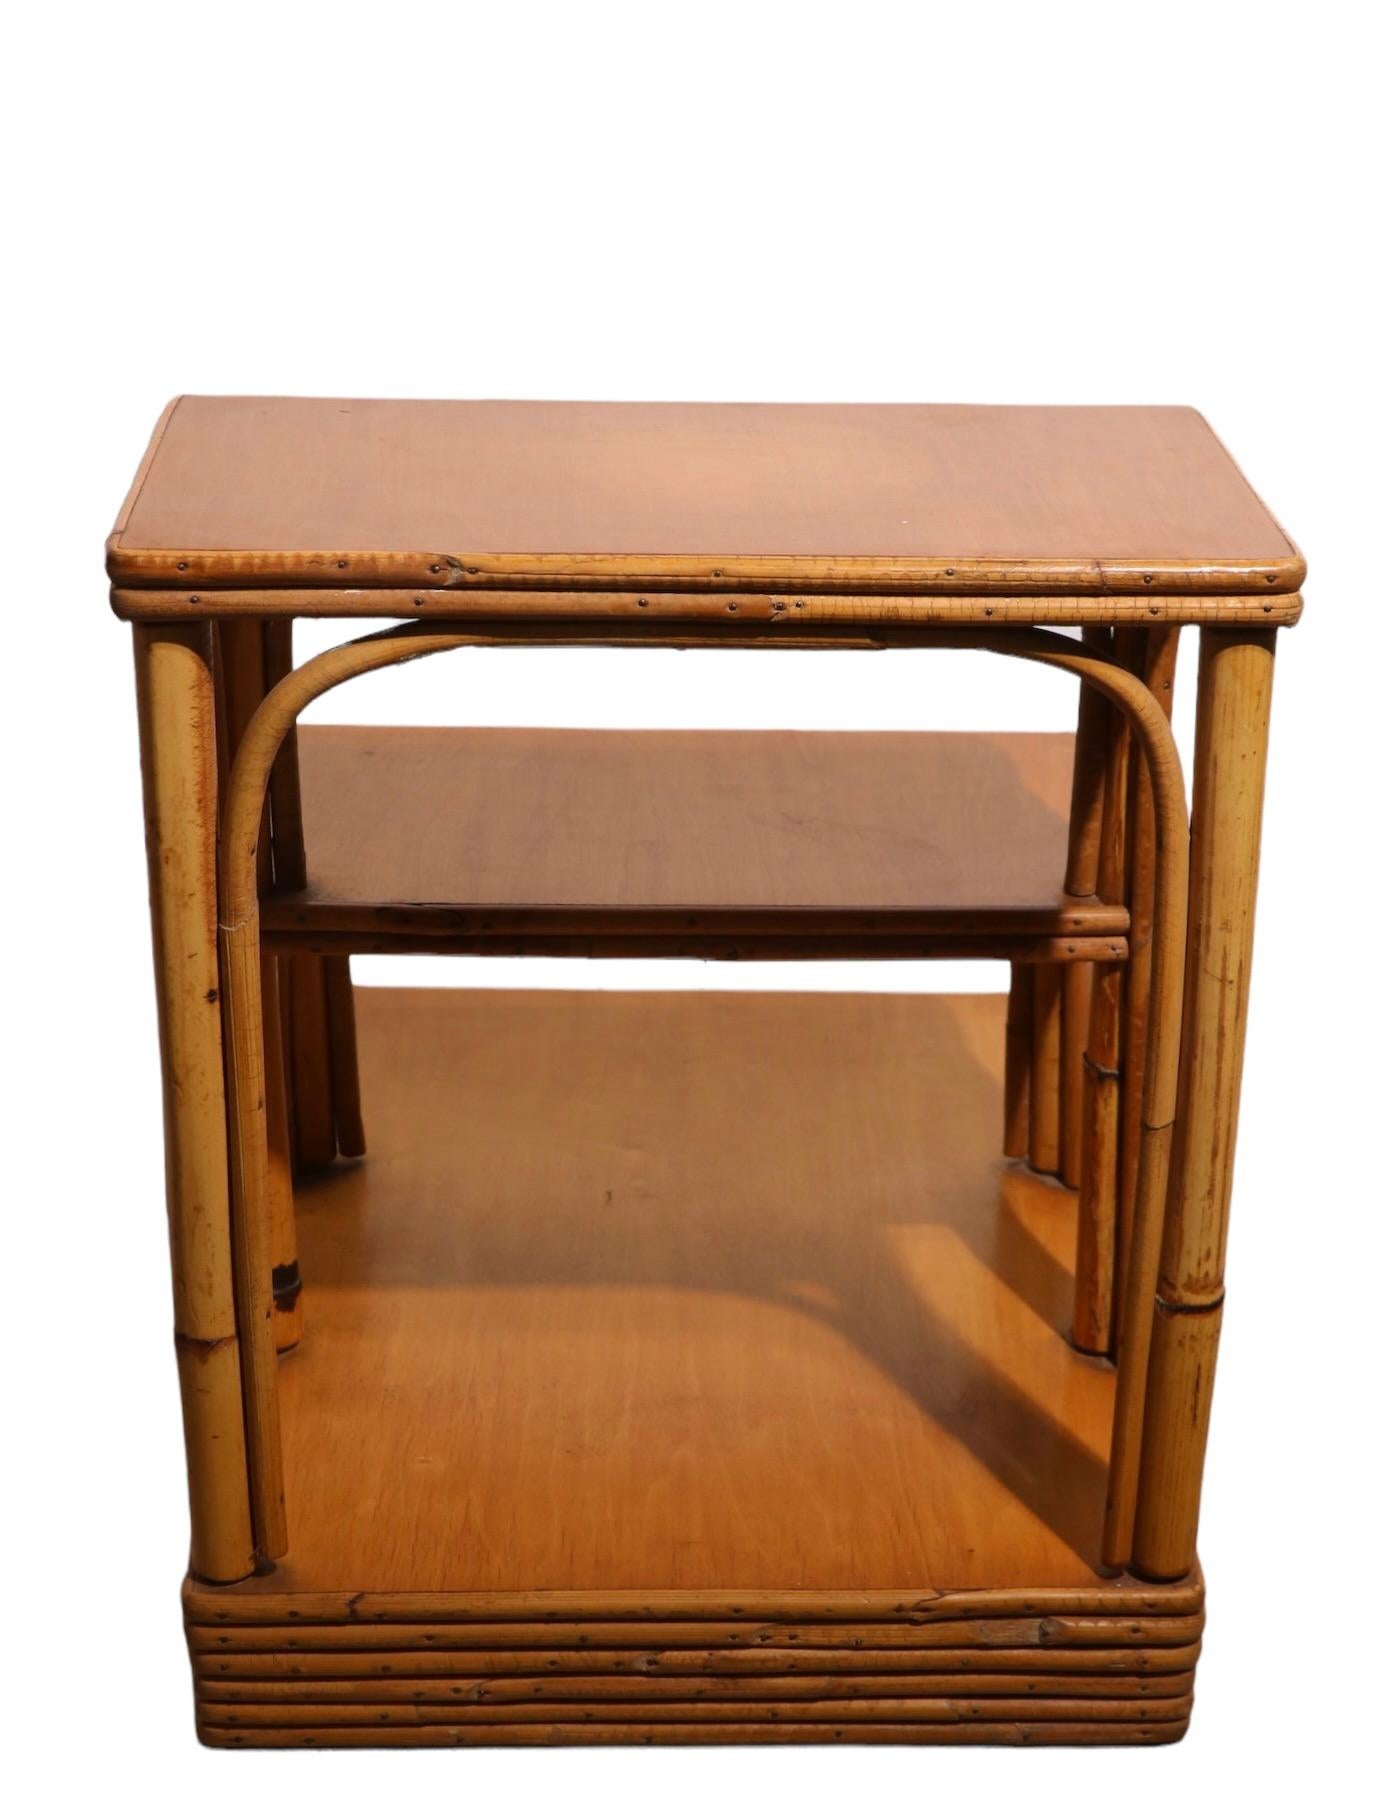 Paire de tables d'appoint en bambou de la célèbre société américaine de meubles Ficks Reed. Chaque table est dotée d'une base en bambou strié et de trois étagères graduées. Connu pour son artisanat de qualité et son design de haut niveau, Ficks Reed